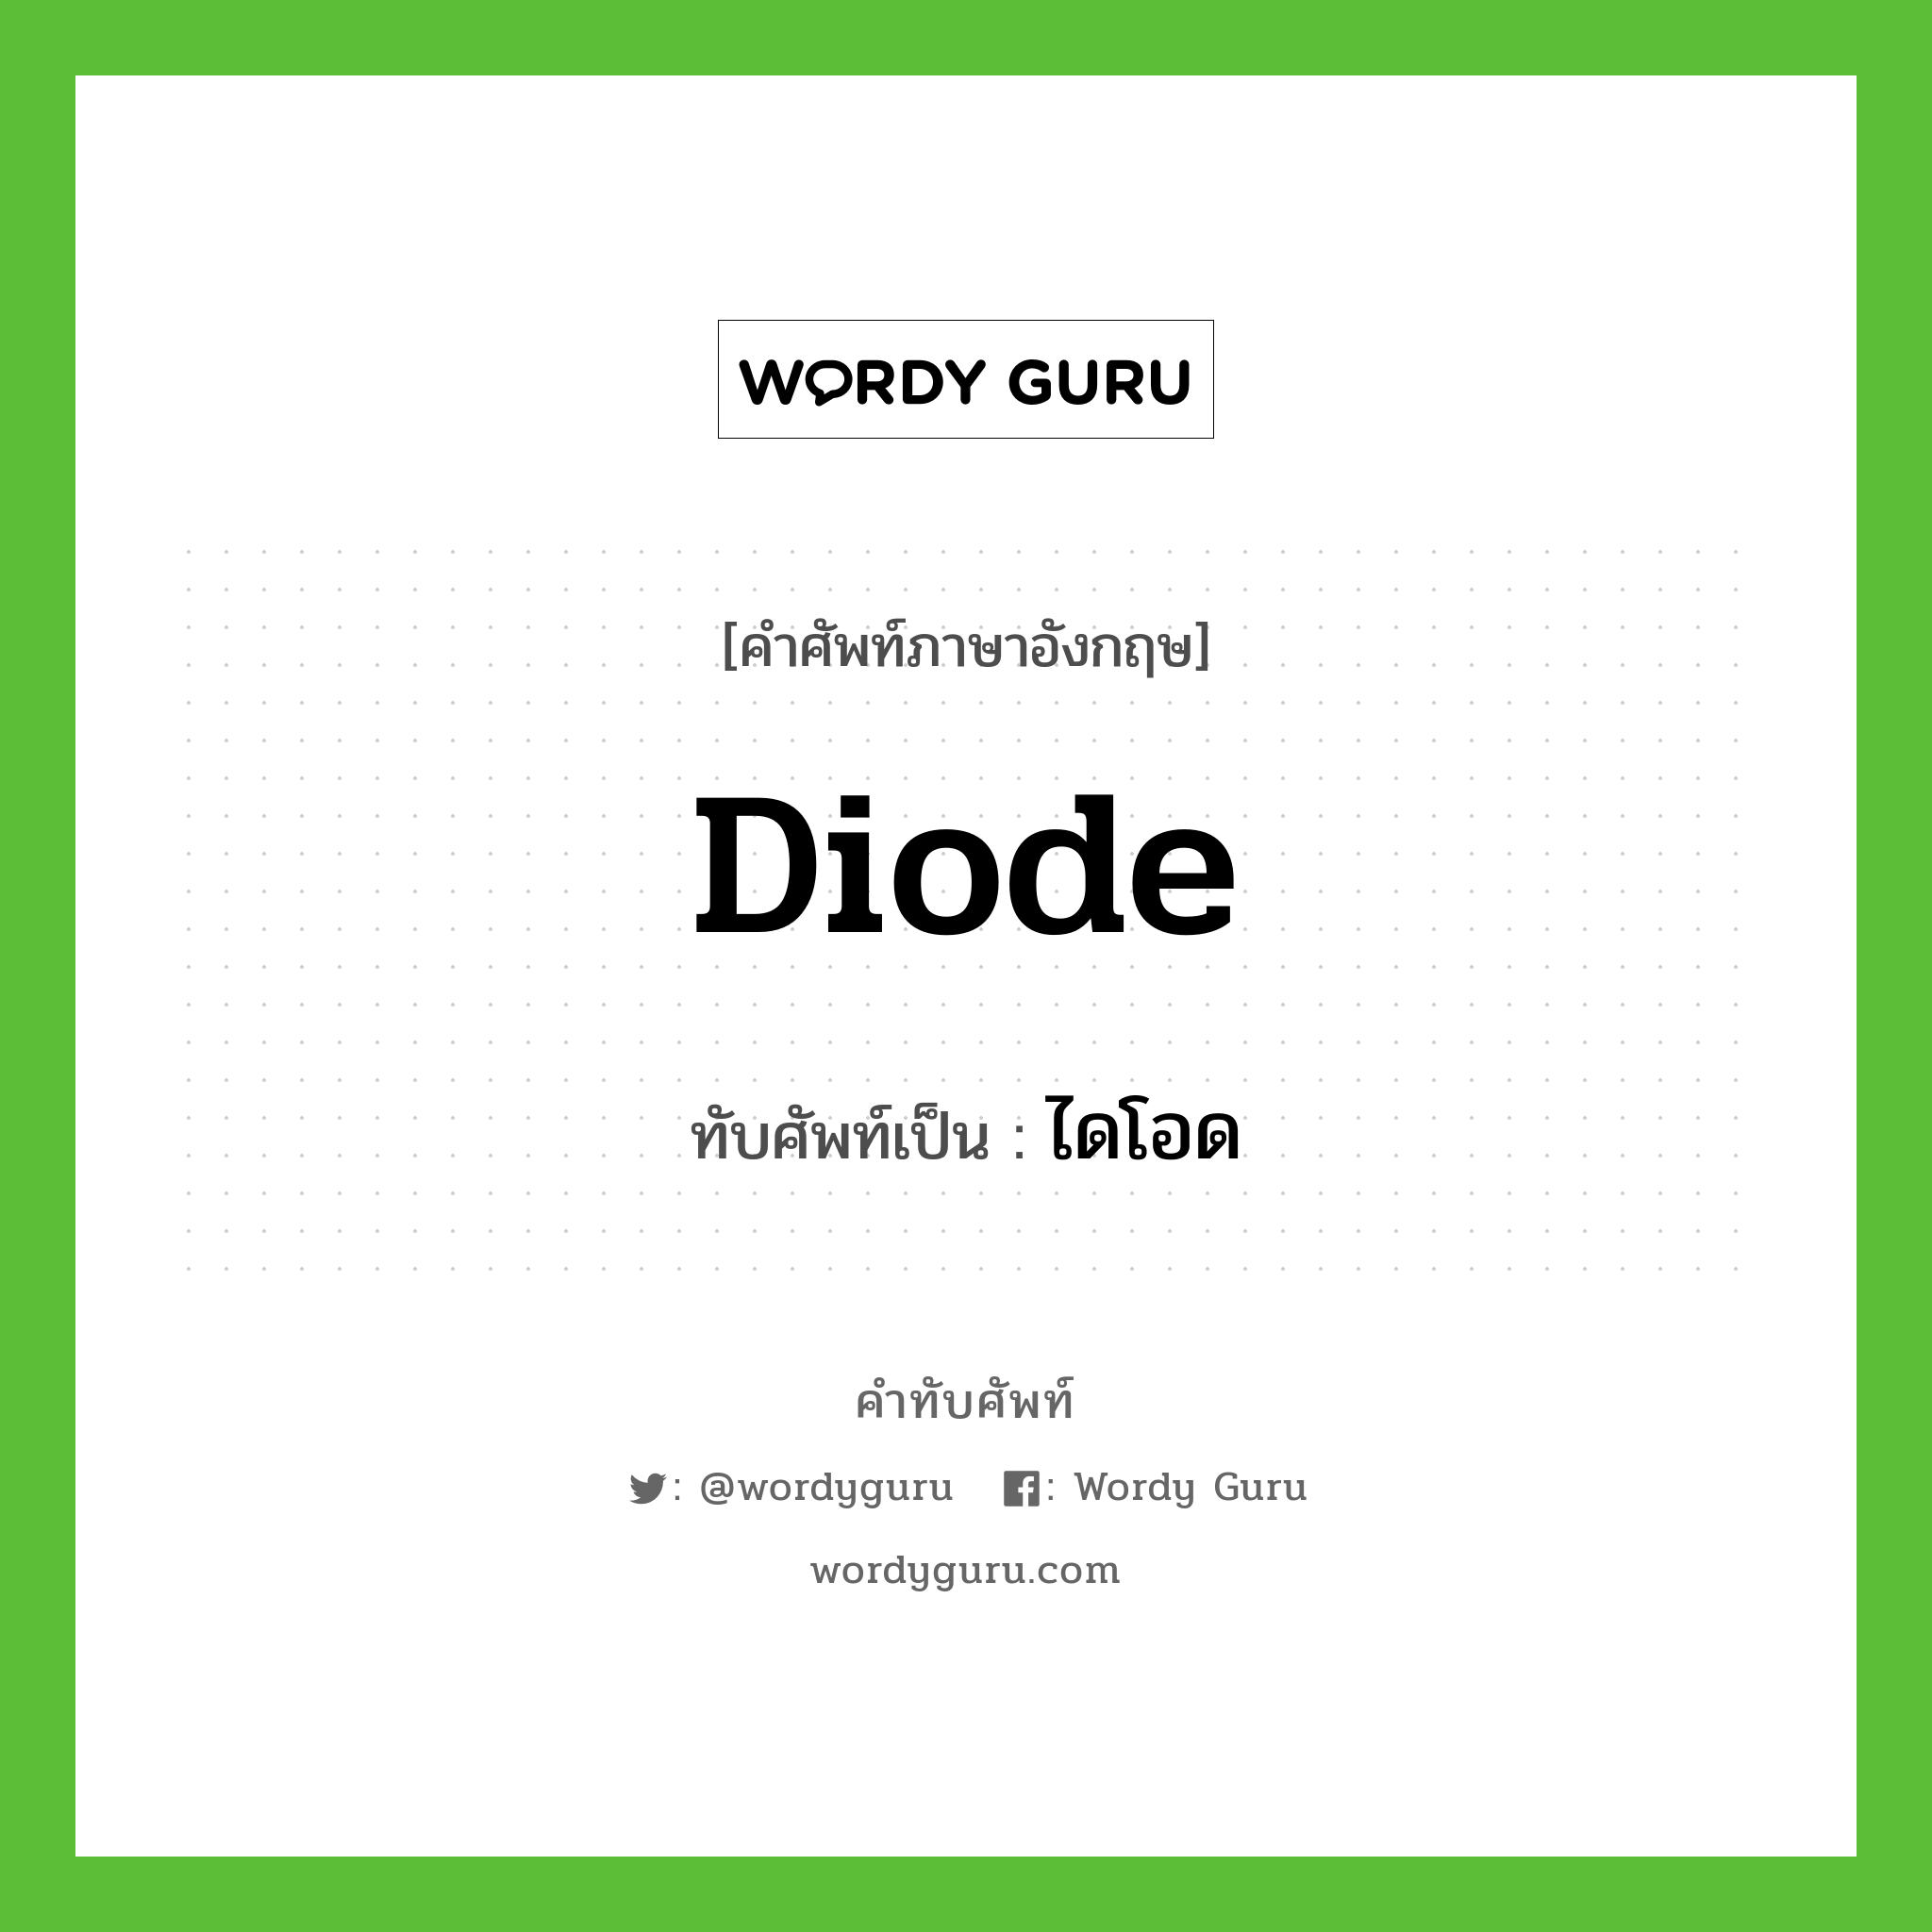 diode เขียนเป็นคำไทยว่าอะไร?, คำศัพท์ภาษาอังกฤษ diode ทับศัพท์เป็น ไดโอด